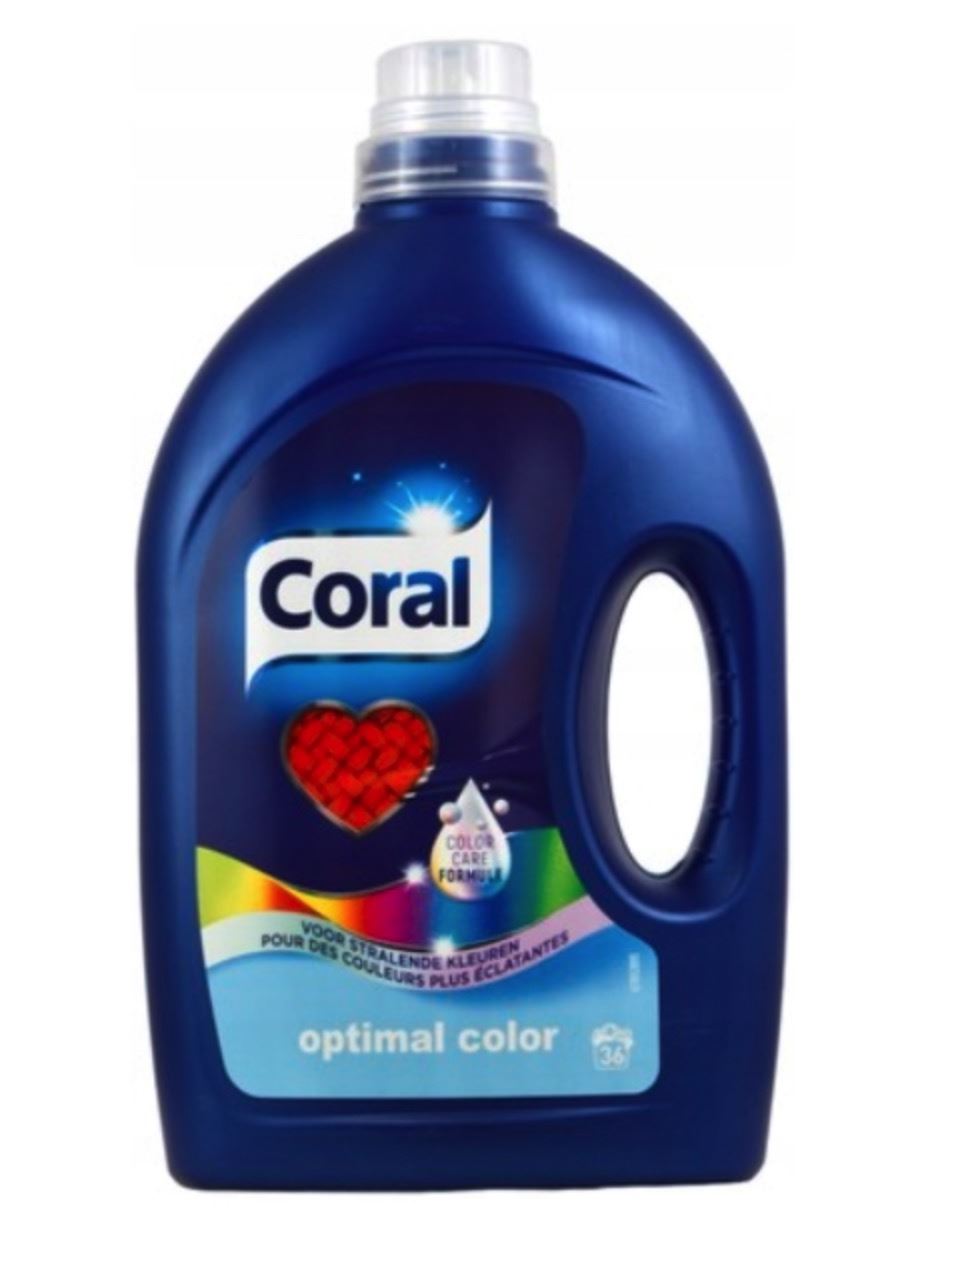 Coral-vloeibaar-wasmiddel-1-728l-36sc-optimal-color